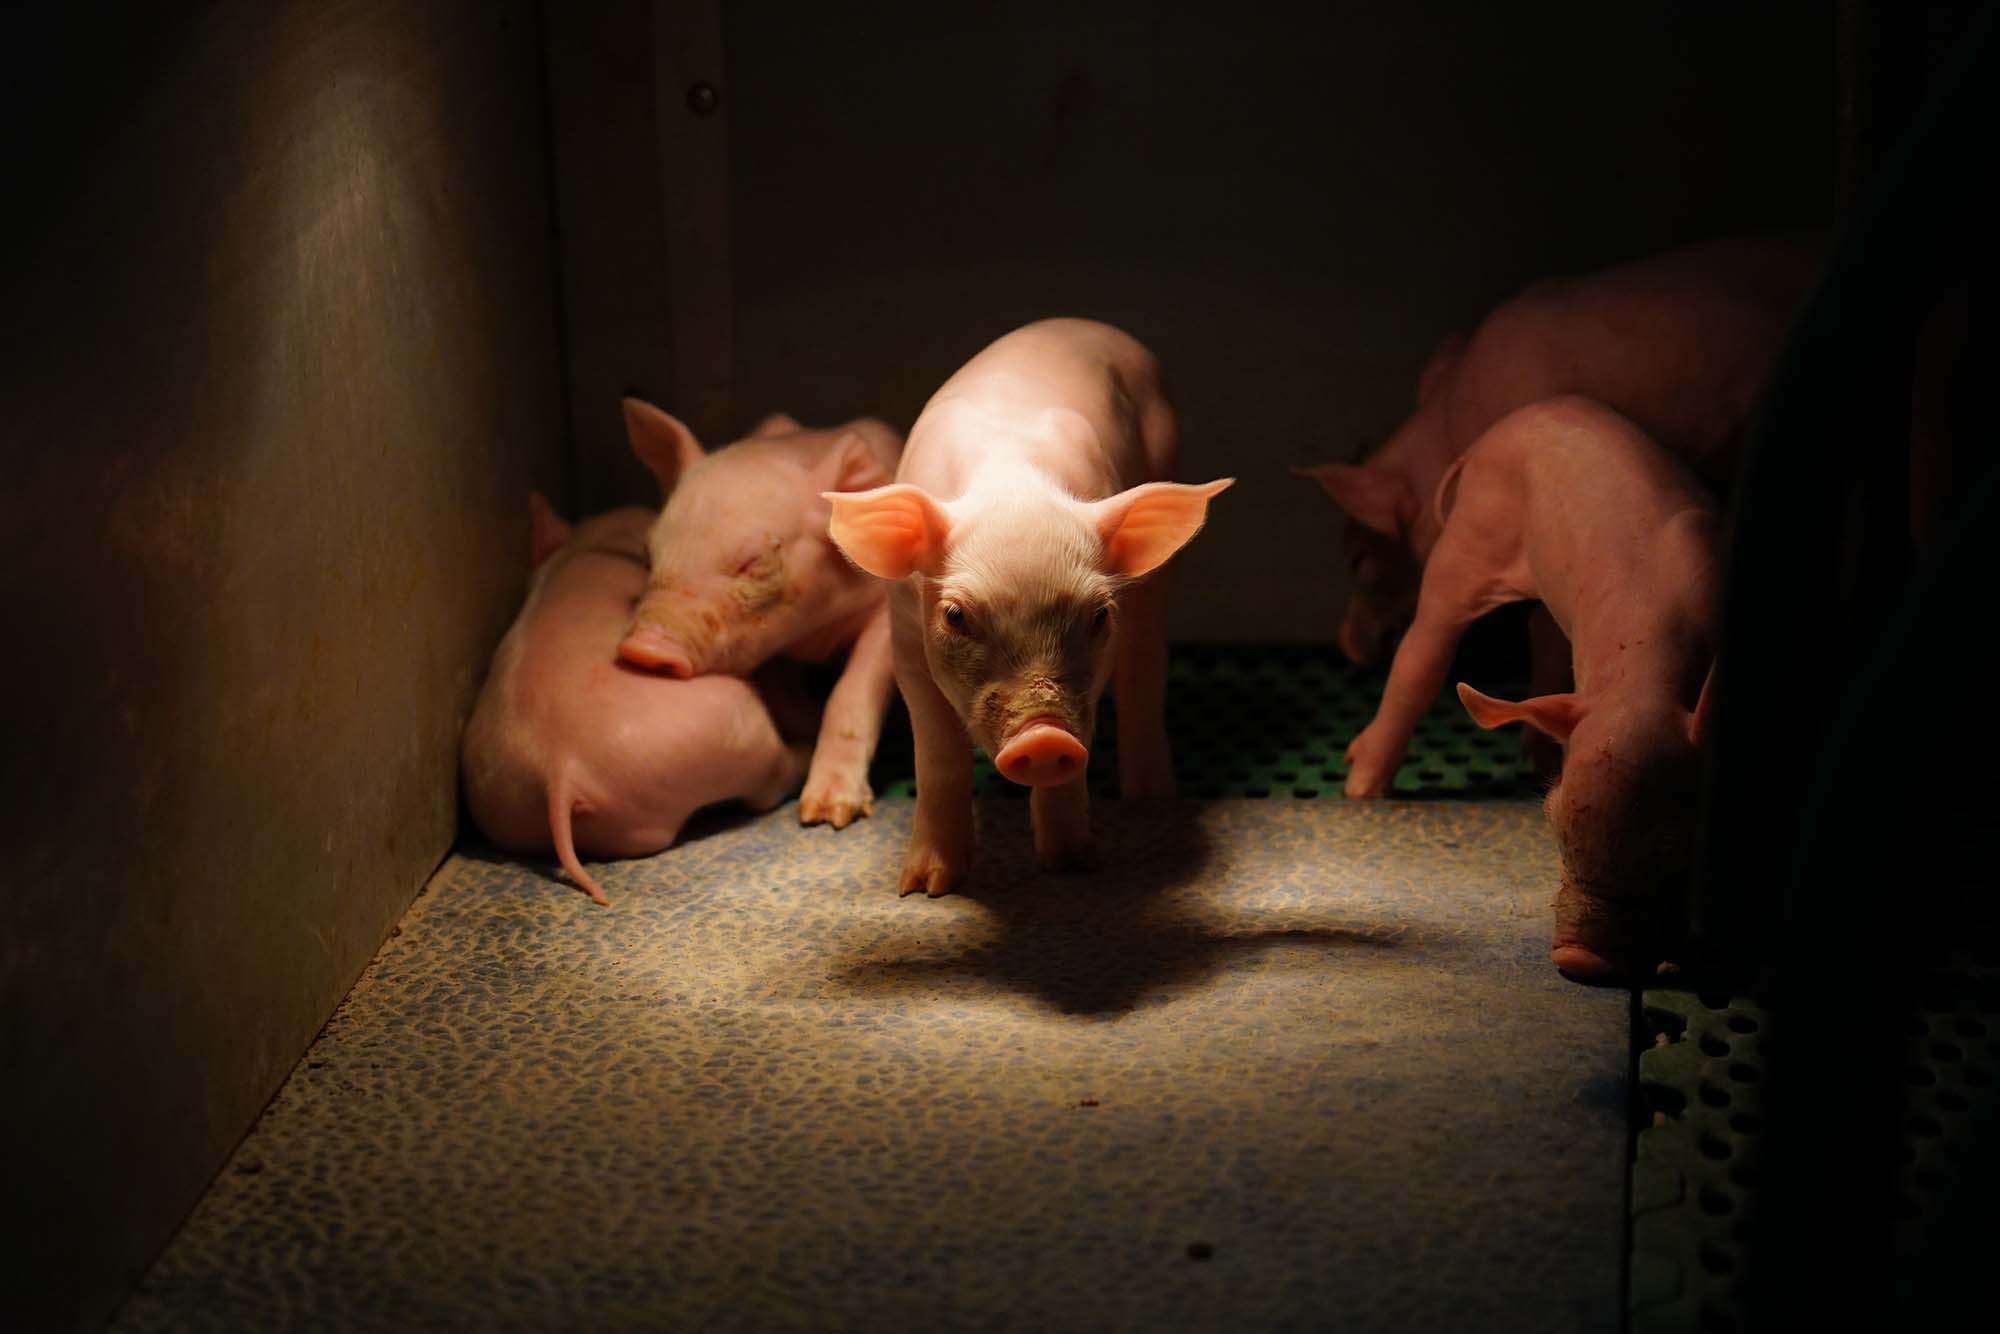 Schweinezucht-Skandal: Ehemaliger Bauernbund-Funktionär unter Tierquälerei-Verdacht